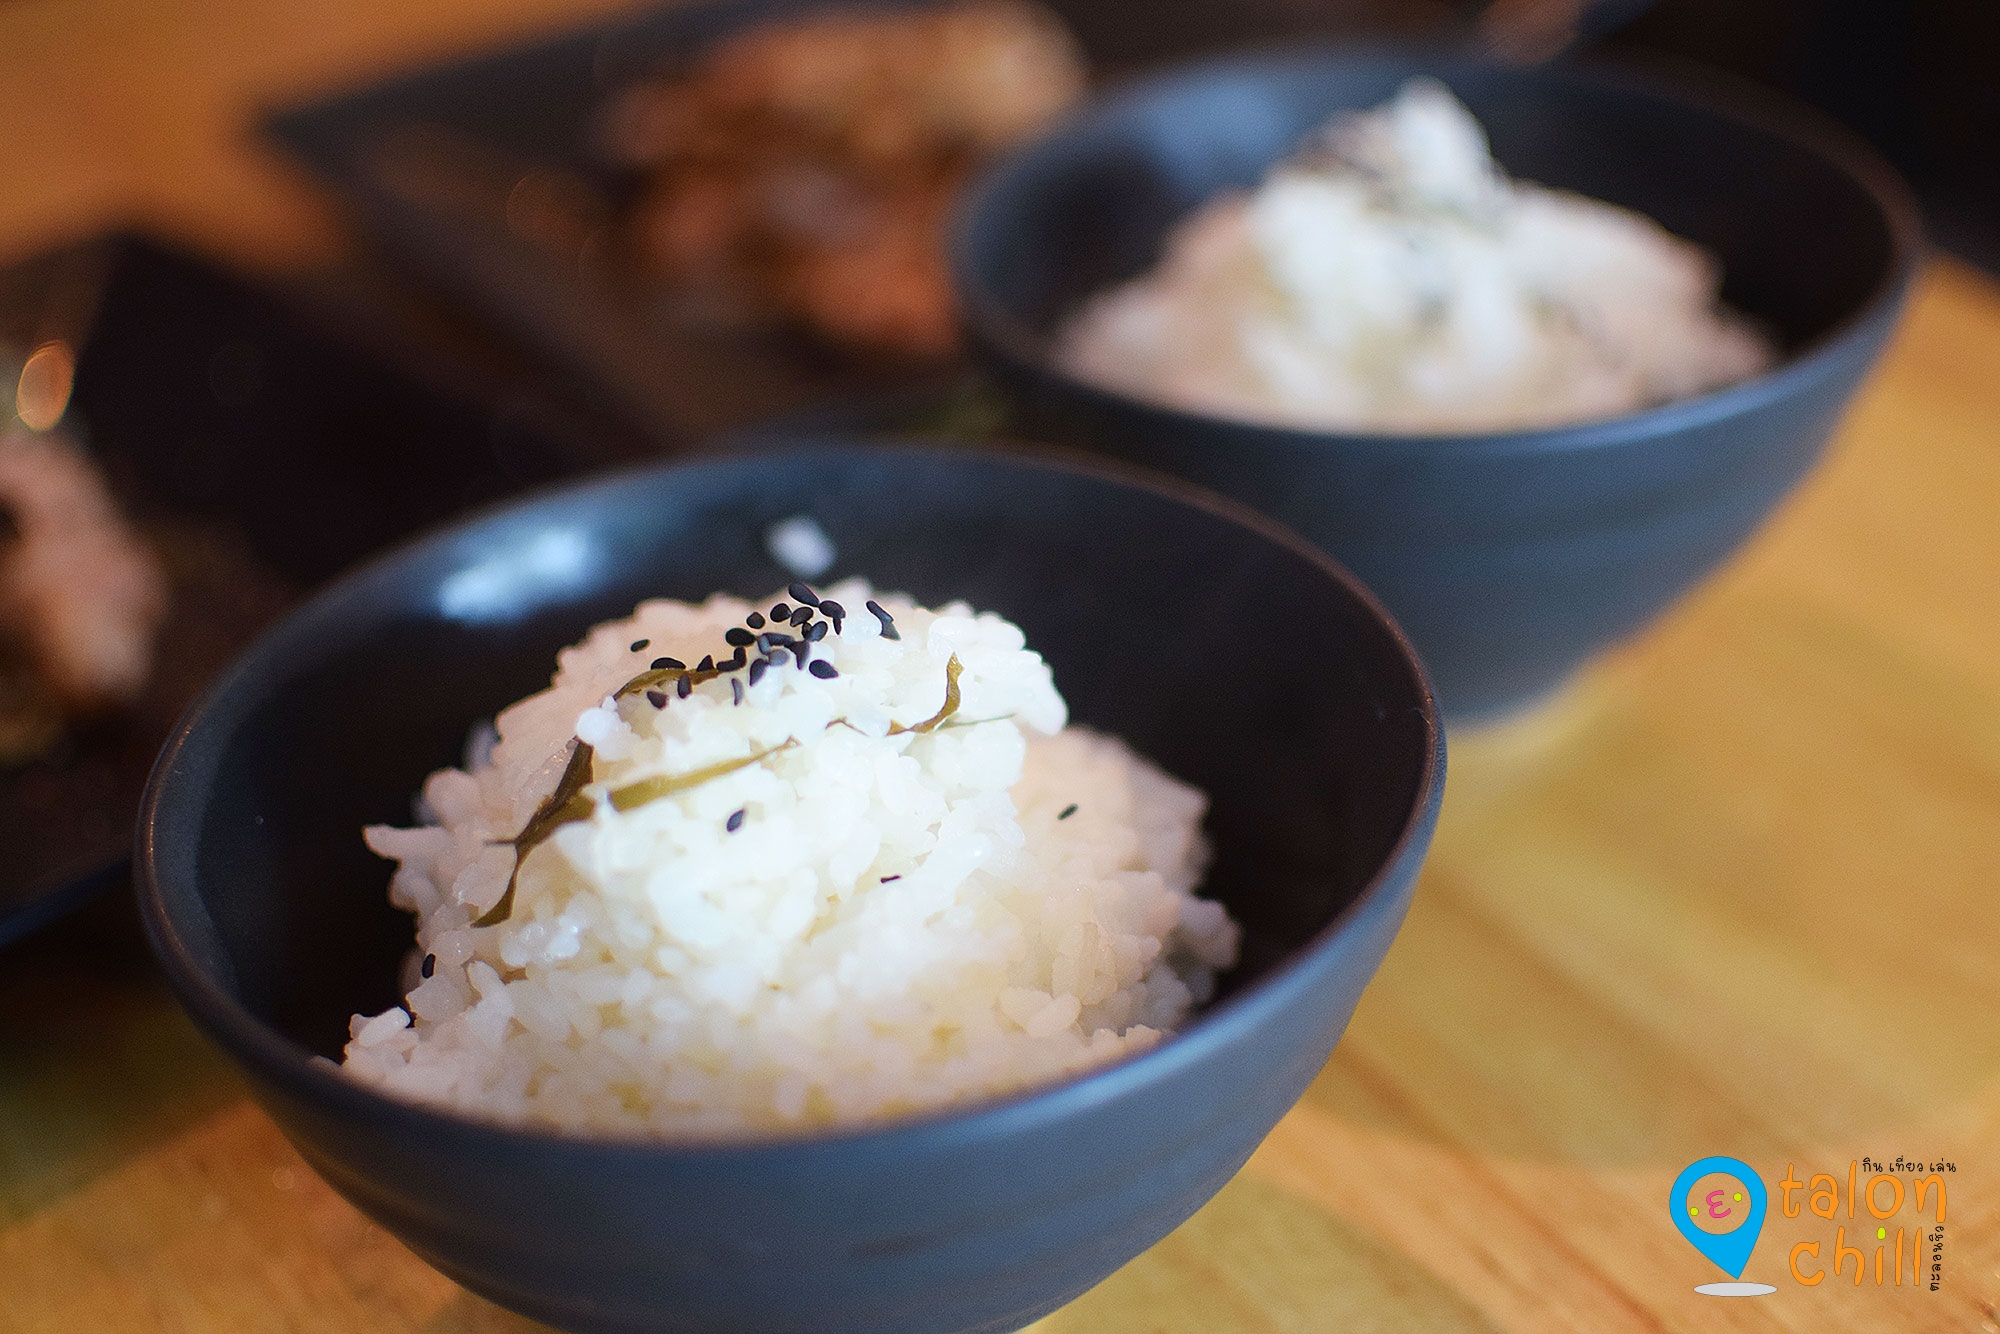 [ตะลุยแหลก] ร้าน Meatfeat อาหารสไตล์ Izakaya (อิซากายะ) แนวเทปันยากิสเต็กสไตล์ญี่ปุ่น ห้ามพลาด